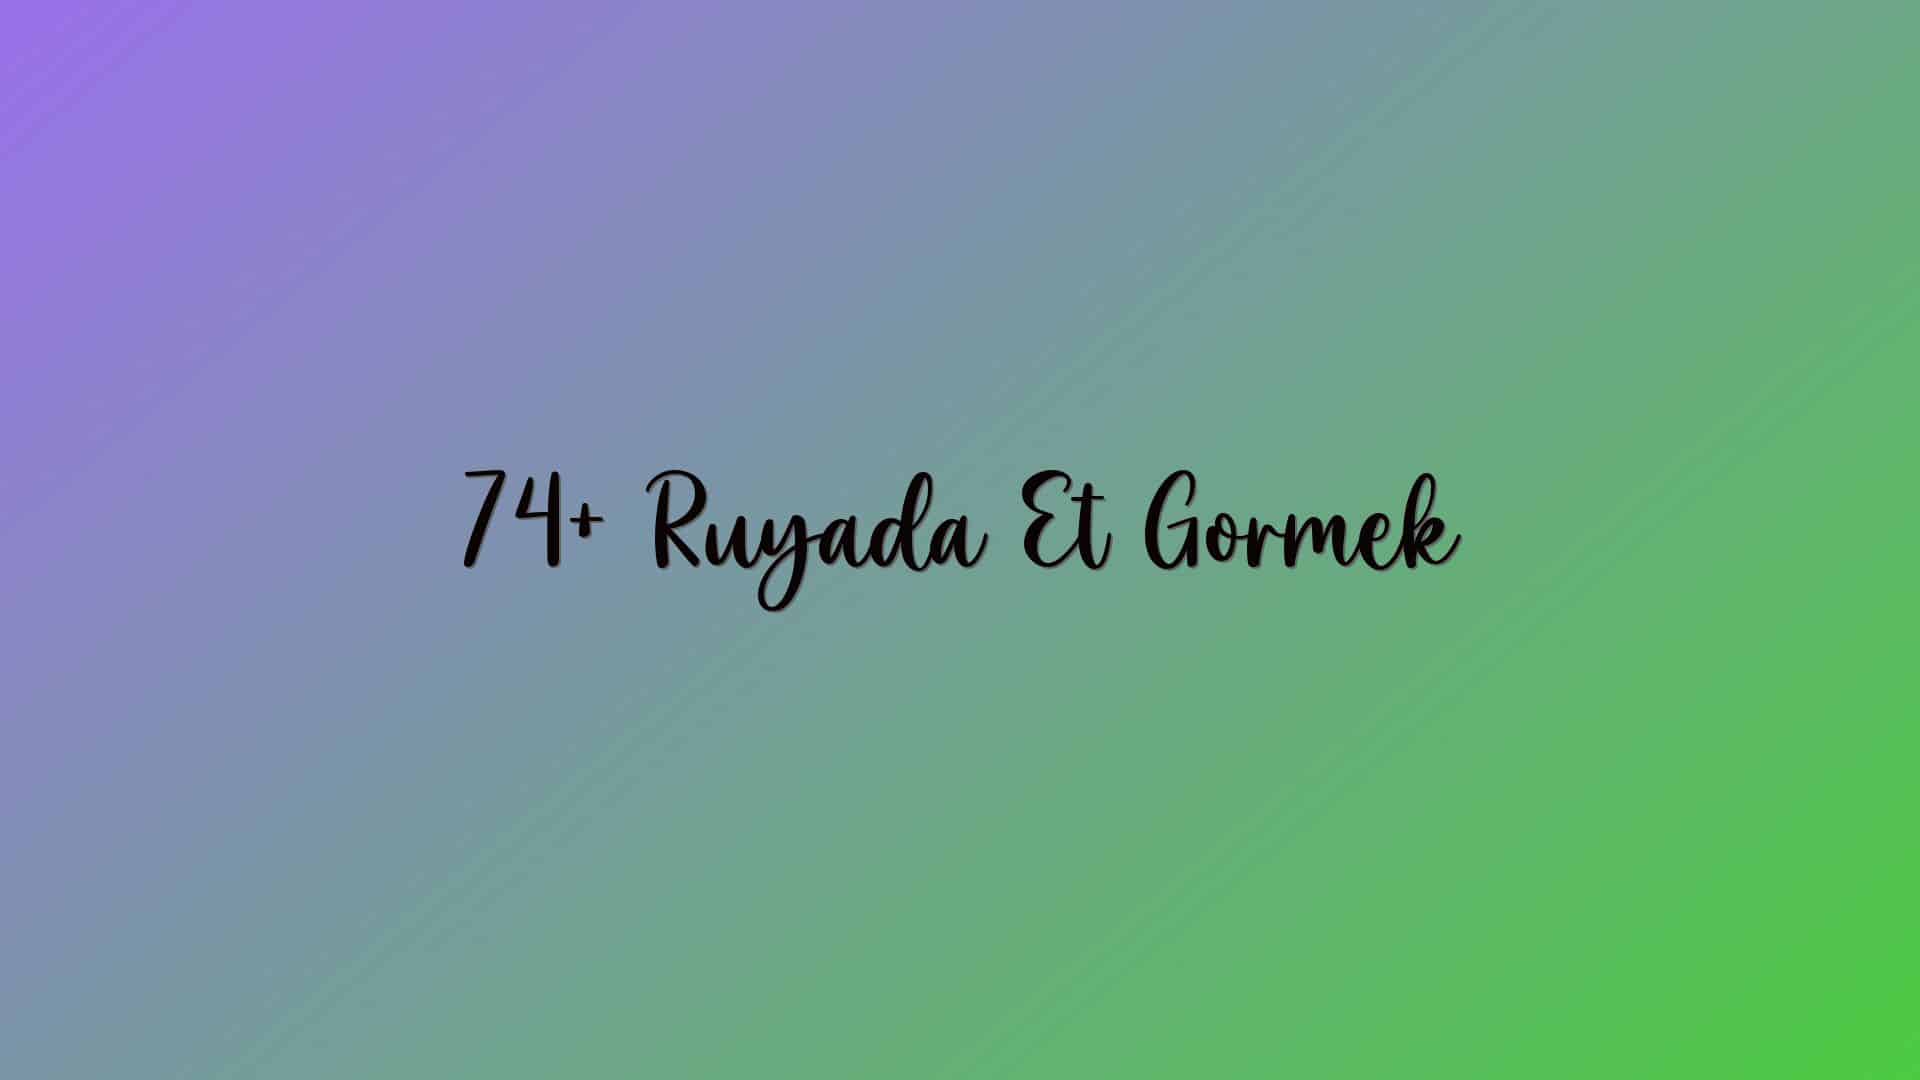 74+ Ruyada Et Gormek